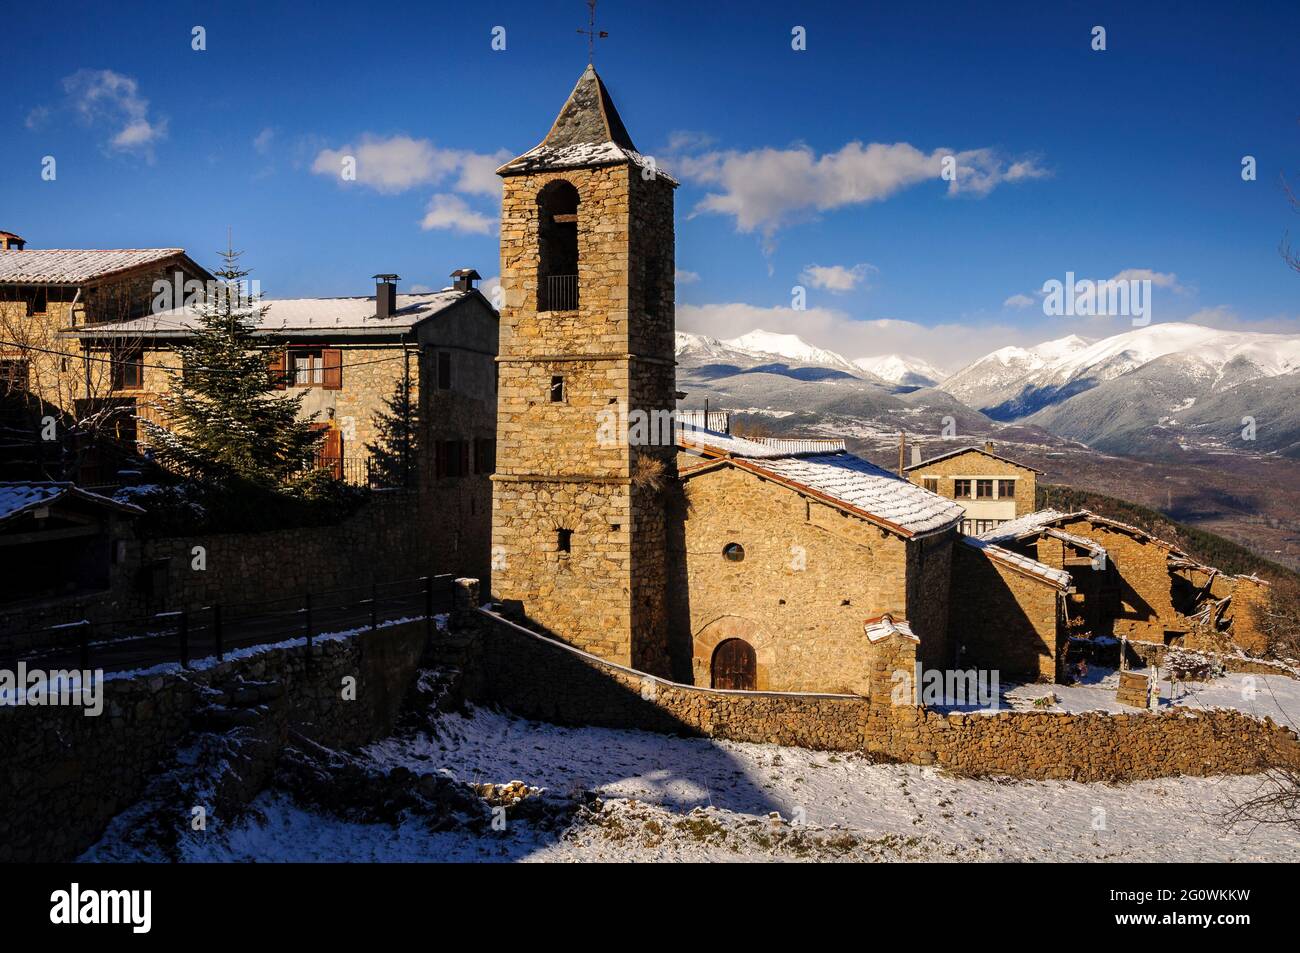 Snowy Estana villaggio in inverno (Cerdanya, Catalogna, Spagna, Pirenei) ESP: Pueblo de Estana nevado en invierno (Cerdaña, Cataluña, España, Pirineos) Foto Stock